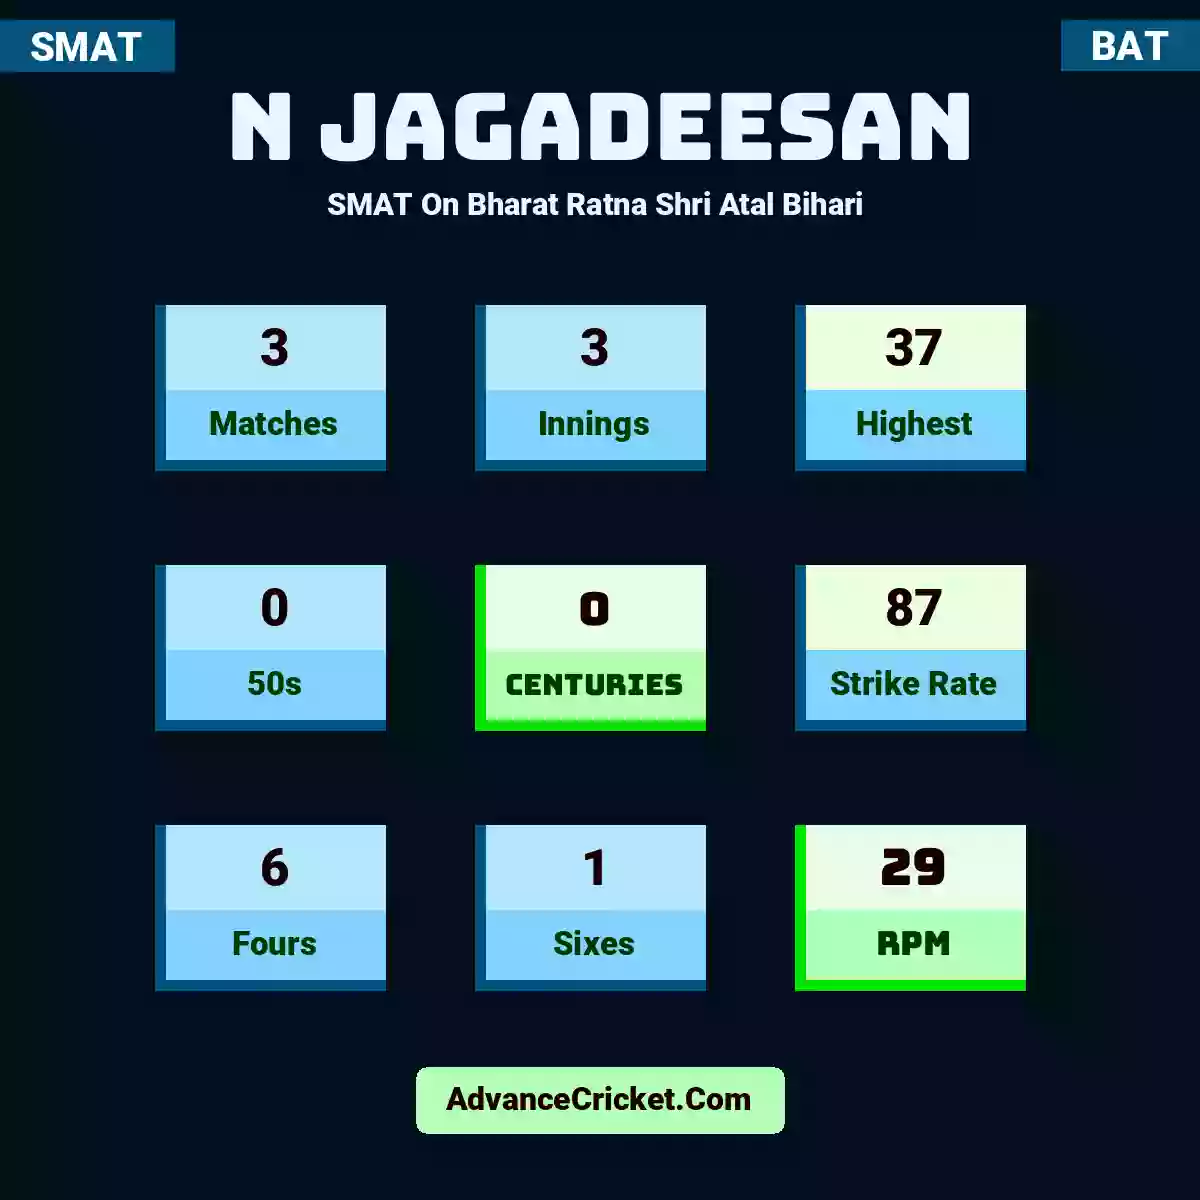 N Jagadeesan SMAT  On Bharat Ratna Shri Atal Bihari , N Jagadeesan played 3 matches, scored 37 runs as highest, 0 half-centuries, and 0 centuries, with a strike rate of 87. N.Jagadeesan hit 6 fours and 1 sixes, with an RPM of 29.